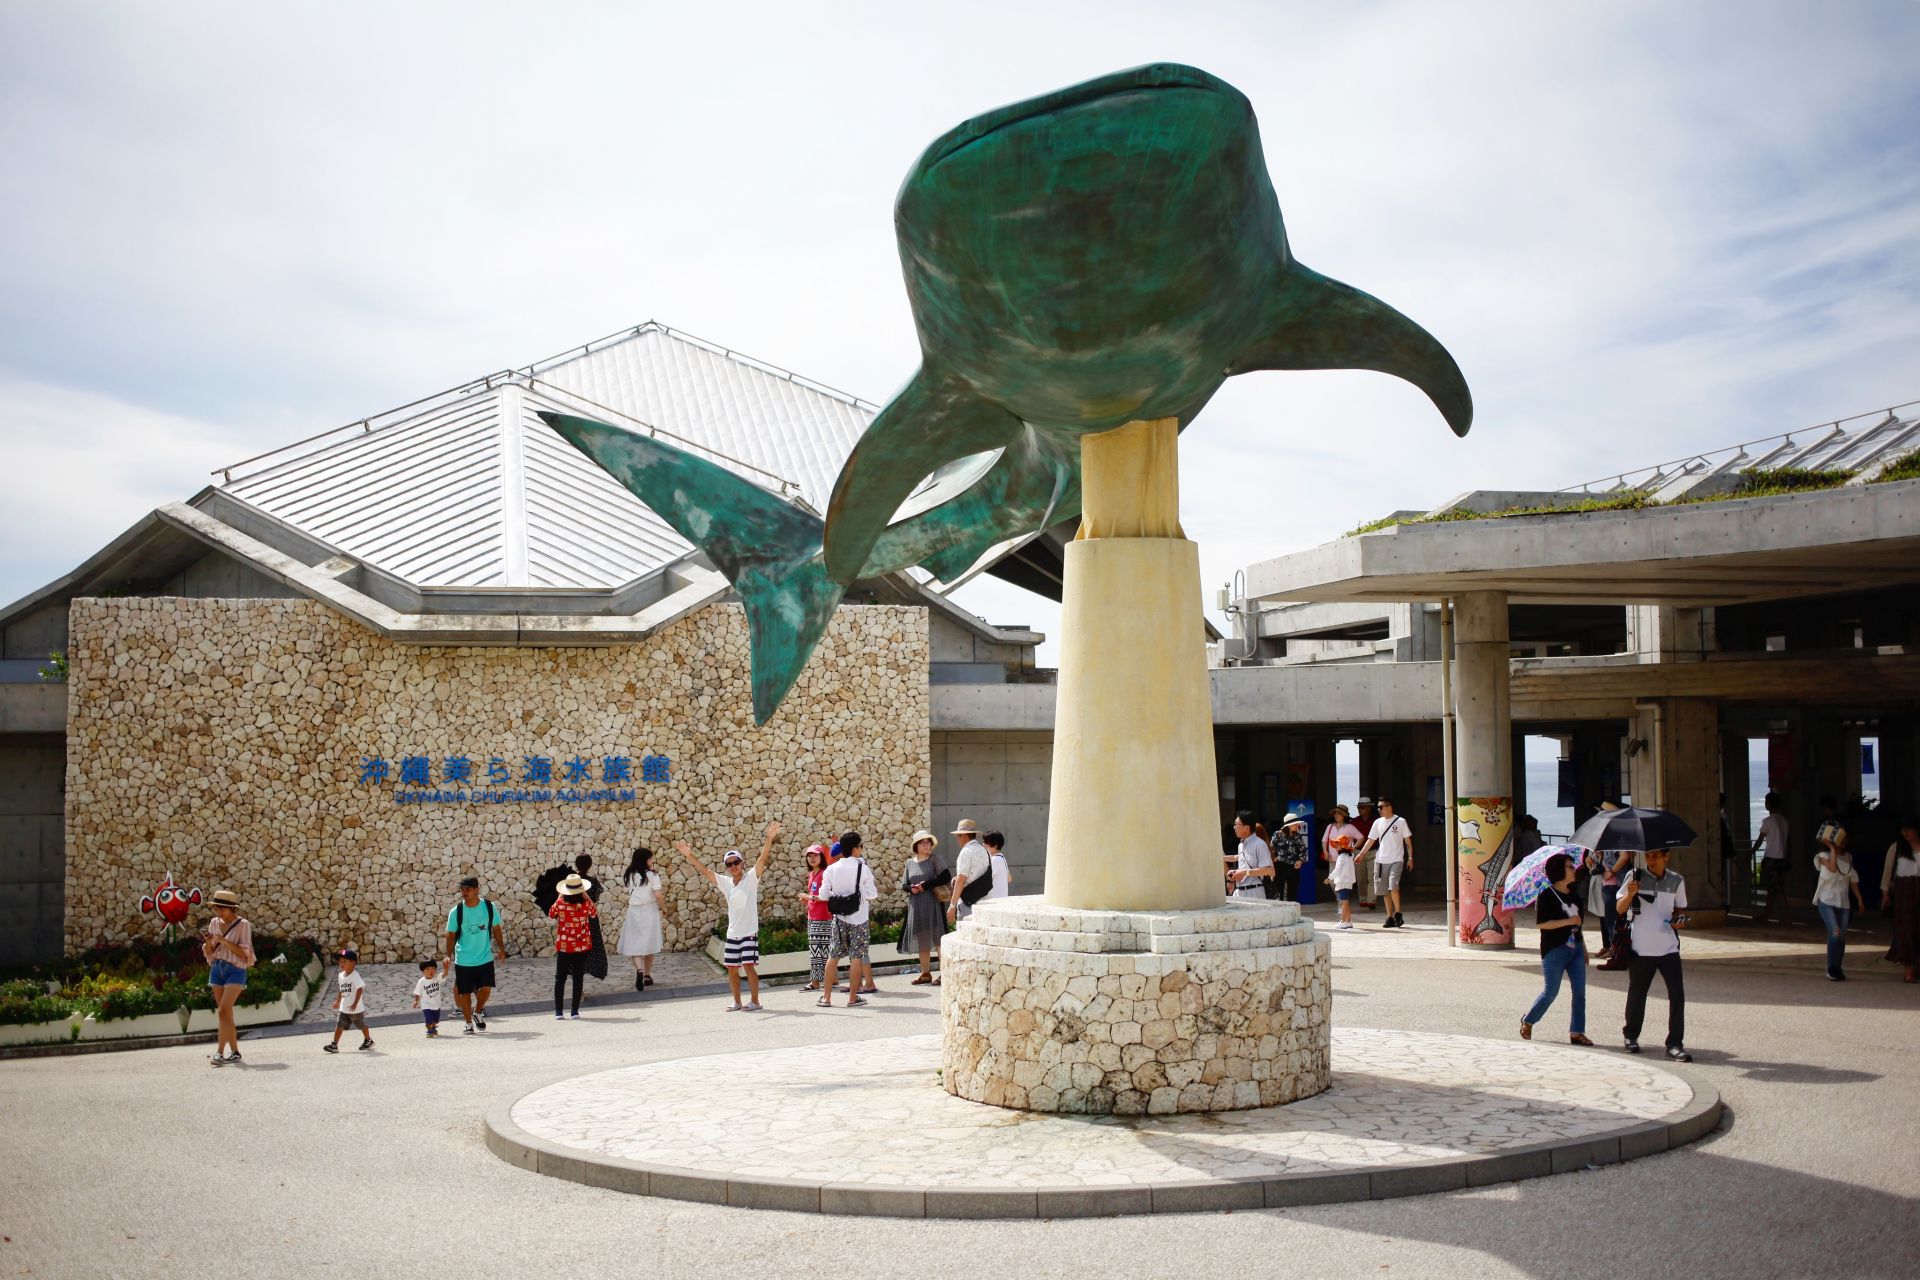 大水槽を泳ぐジンベエザメやマンタの迫力がスゴい 世界最大級の水族館 美ら海水族館 を再訪 Oh My ブログ